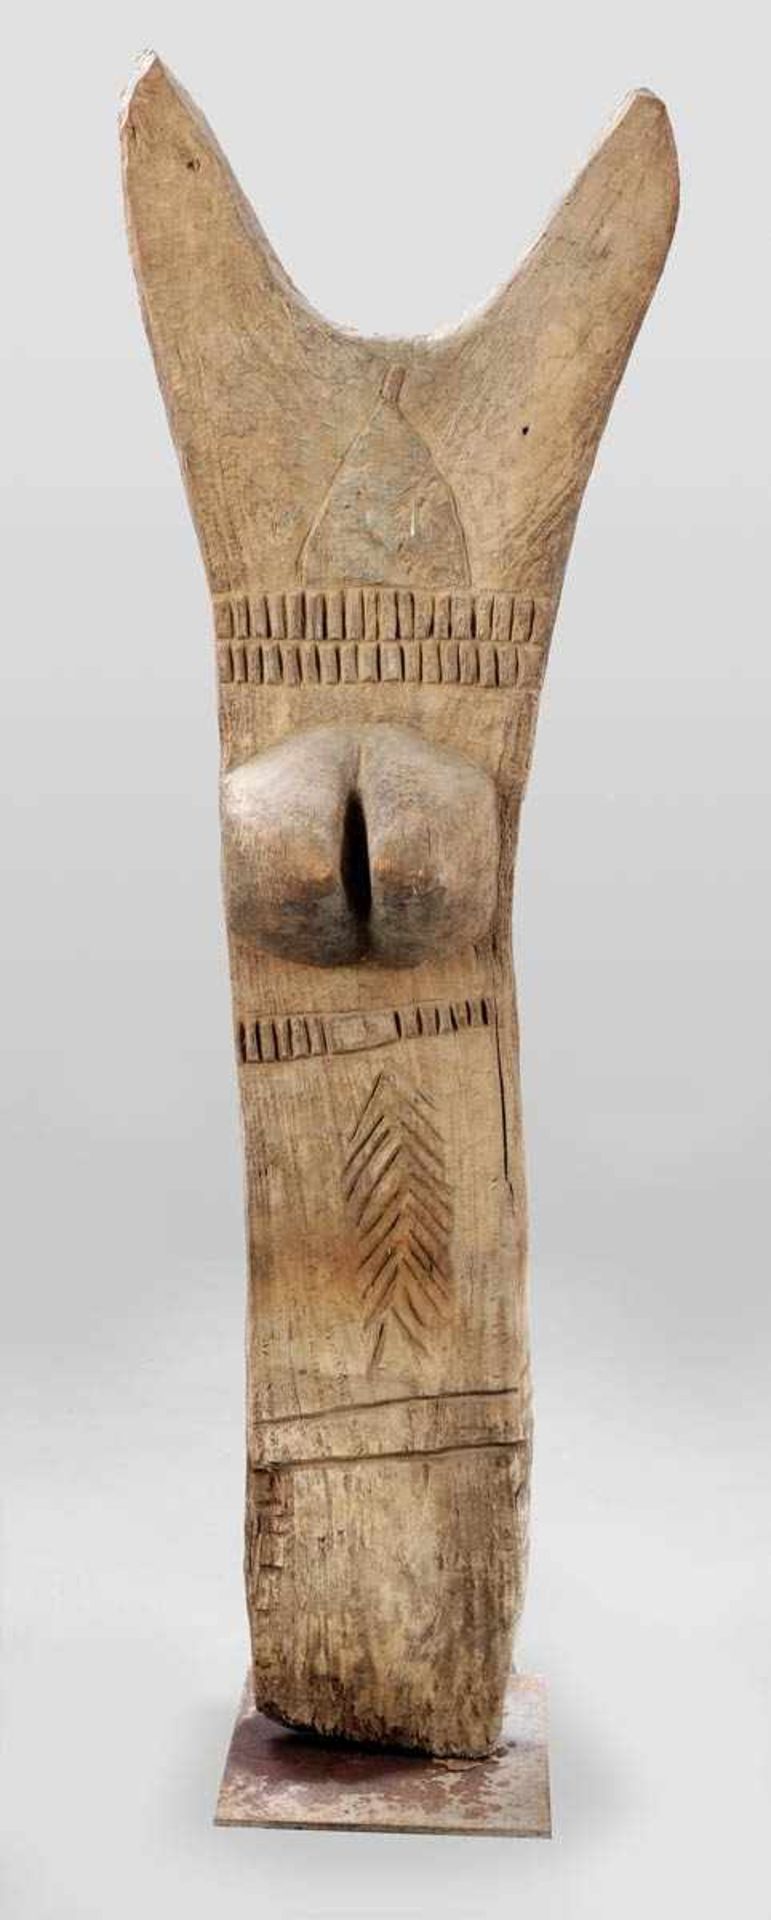 Togu-Na Pfostenskulptur Dogon, Mali um 1900. Holz. 205 x 62 x 40 cm. Der Metallsockel ist aus